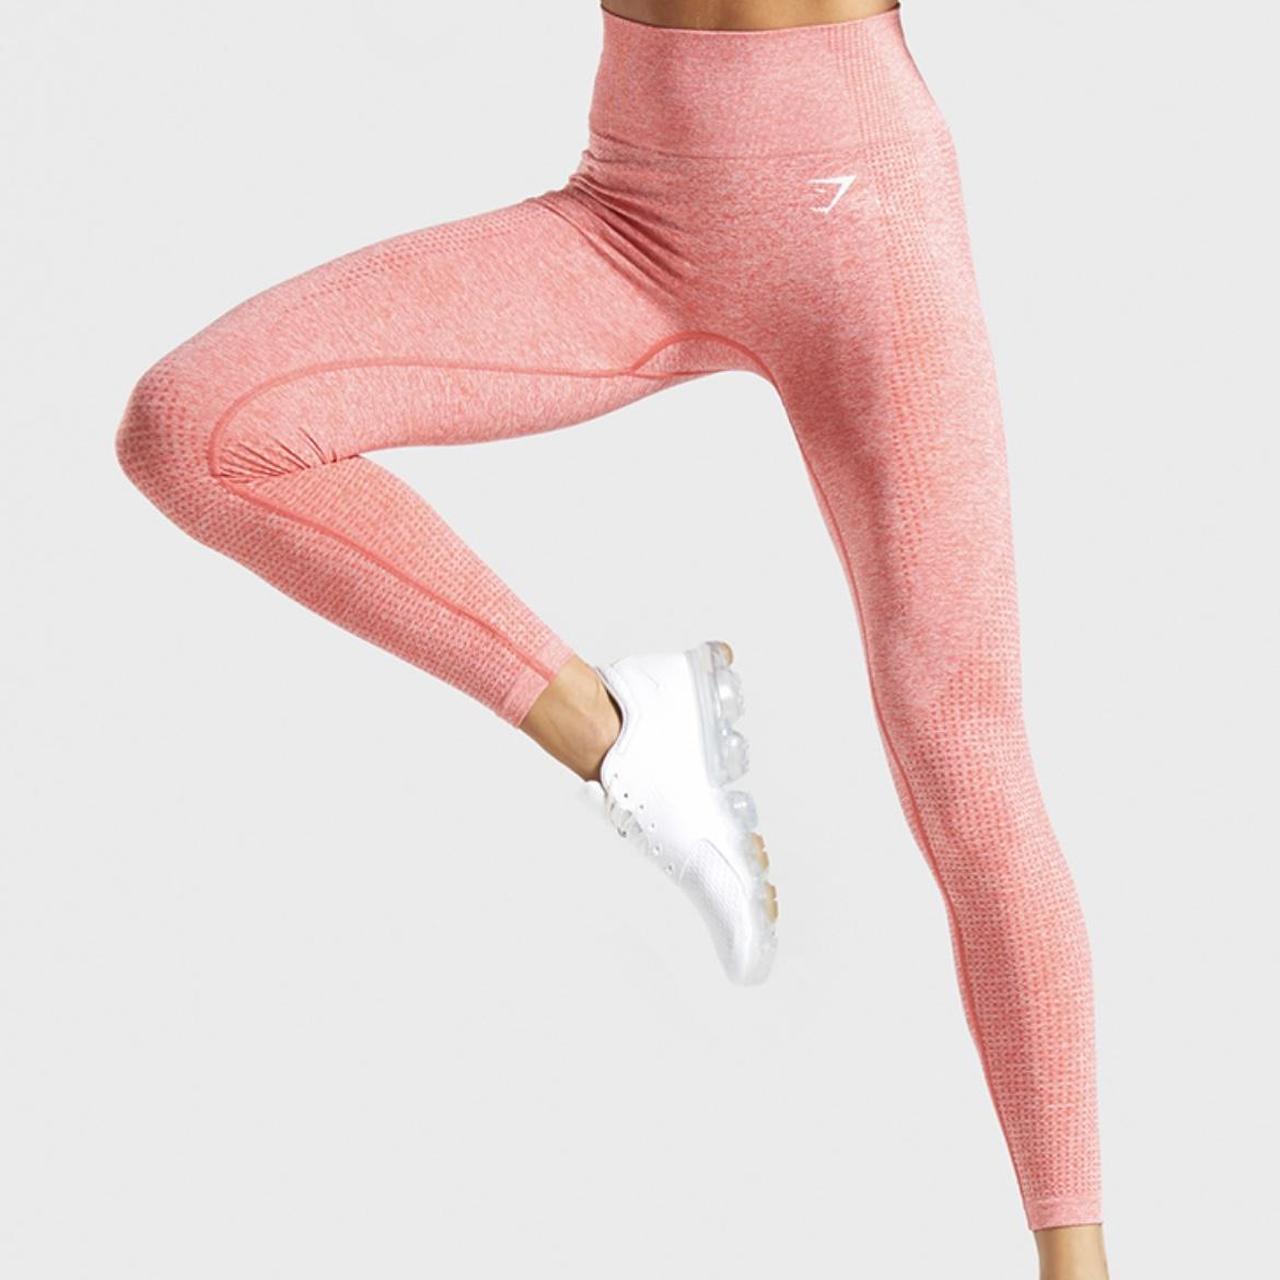 Gymshark vital seamless leggings in pink marl.